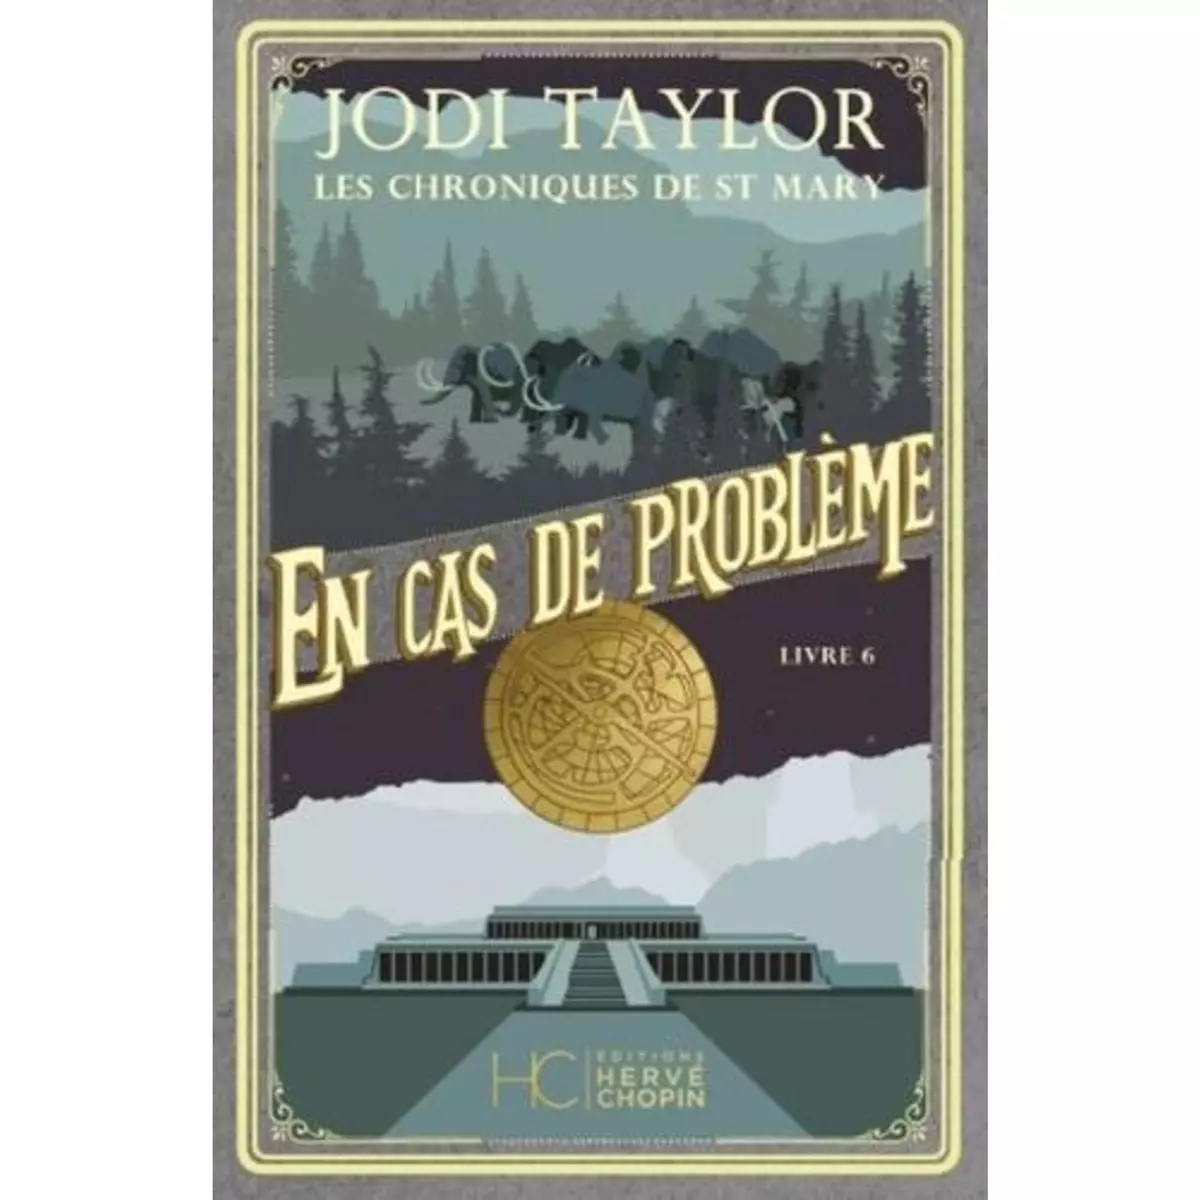  LES CHRONIQUES DE ST MARY TOME 6 : EN CAS DE PROBLEME, Taylor Jodi